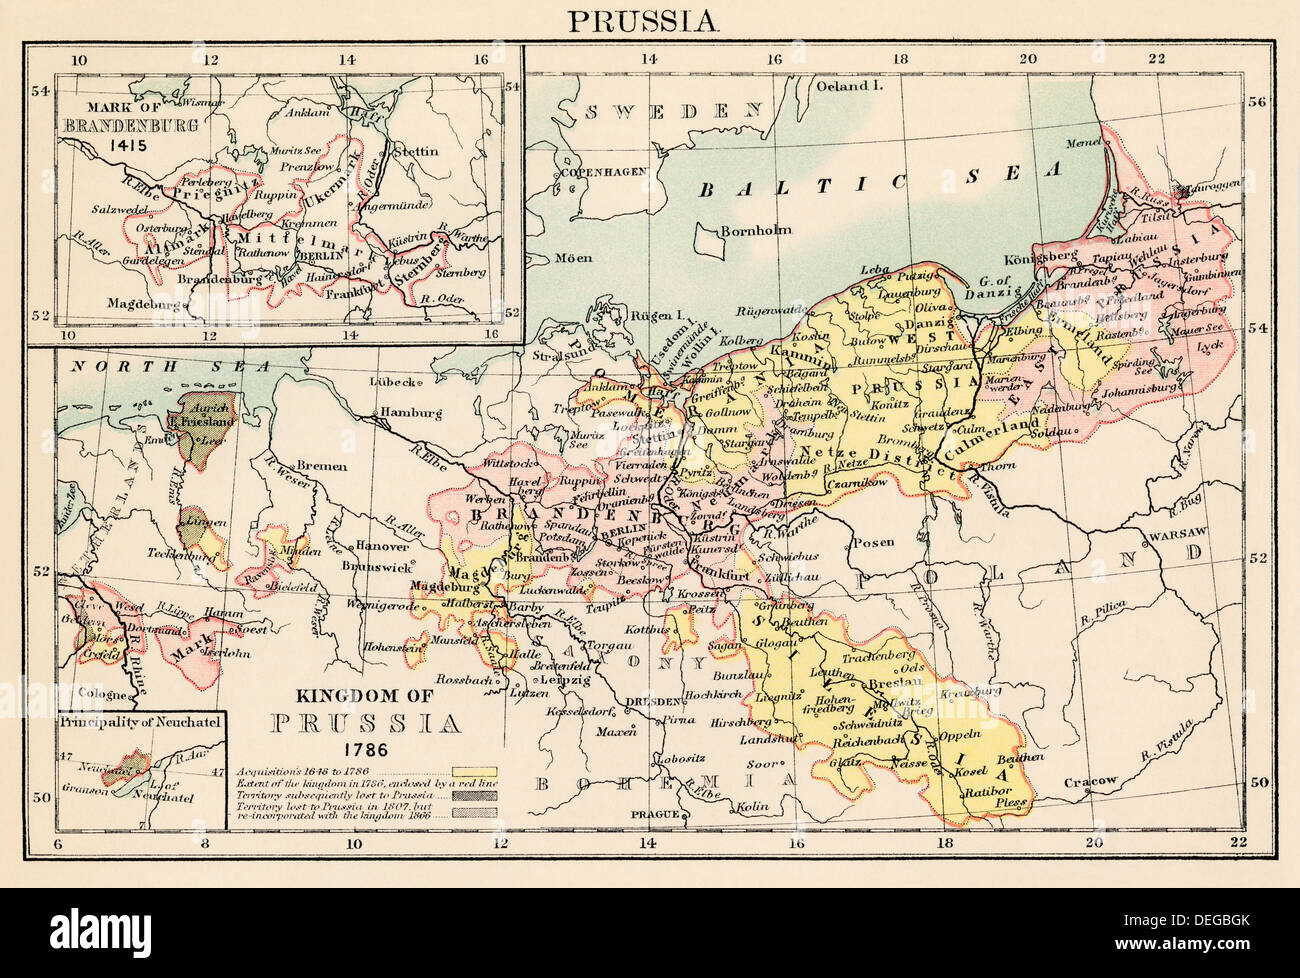 Mapa del reino de Prusia en 1786, y Brandenburgo en 1415. Litografía de color Foto de stock